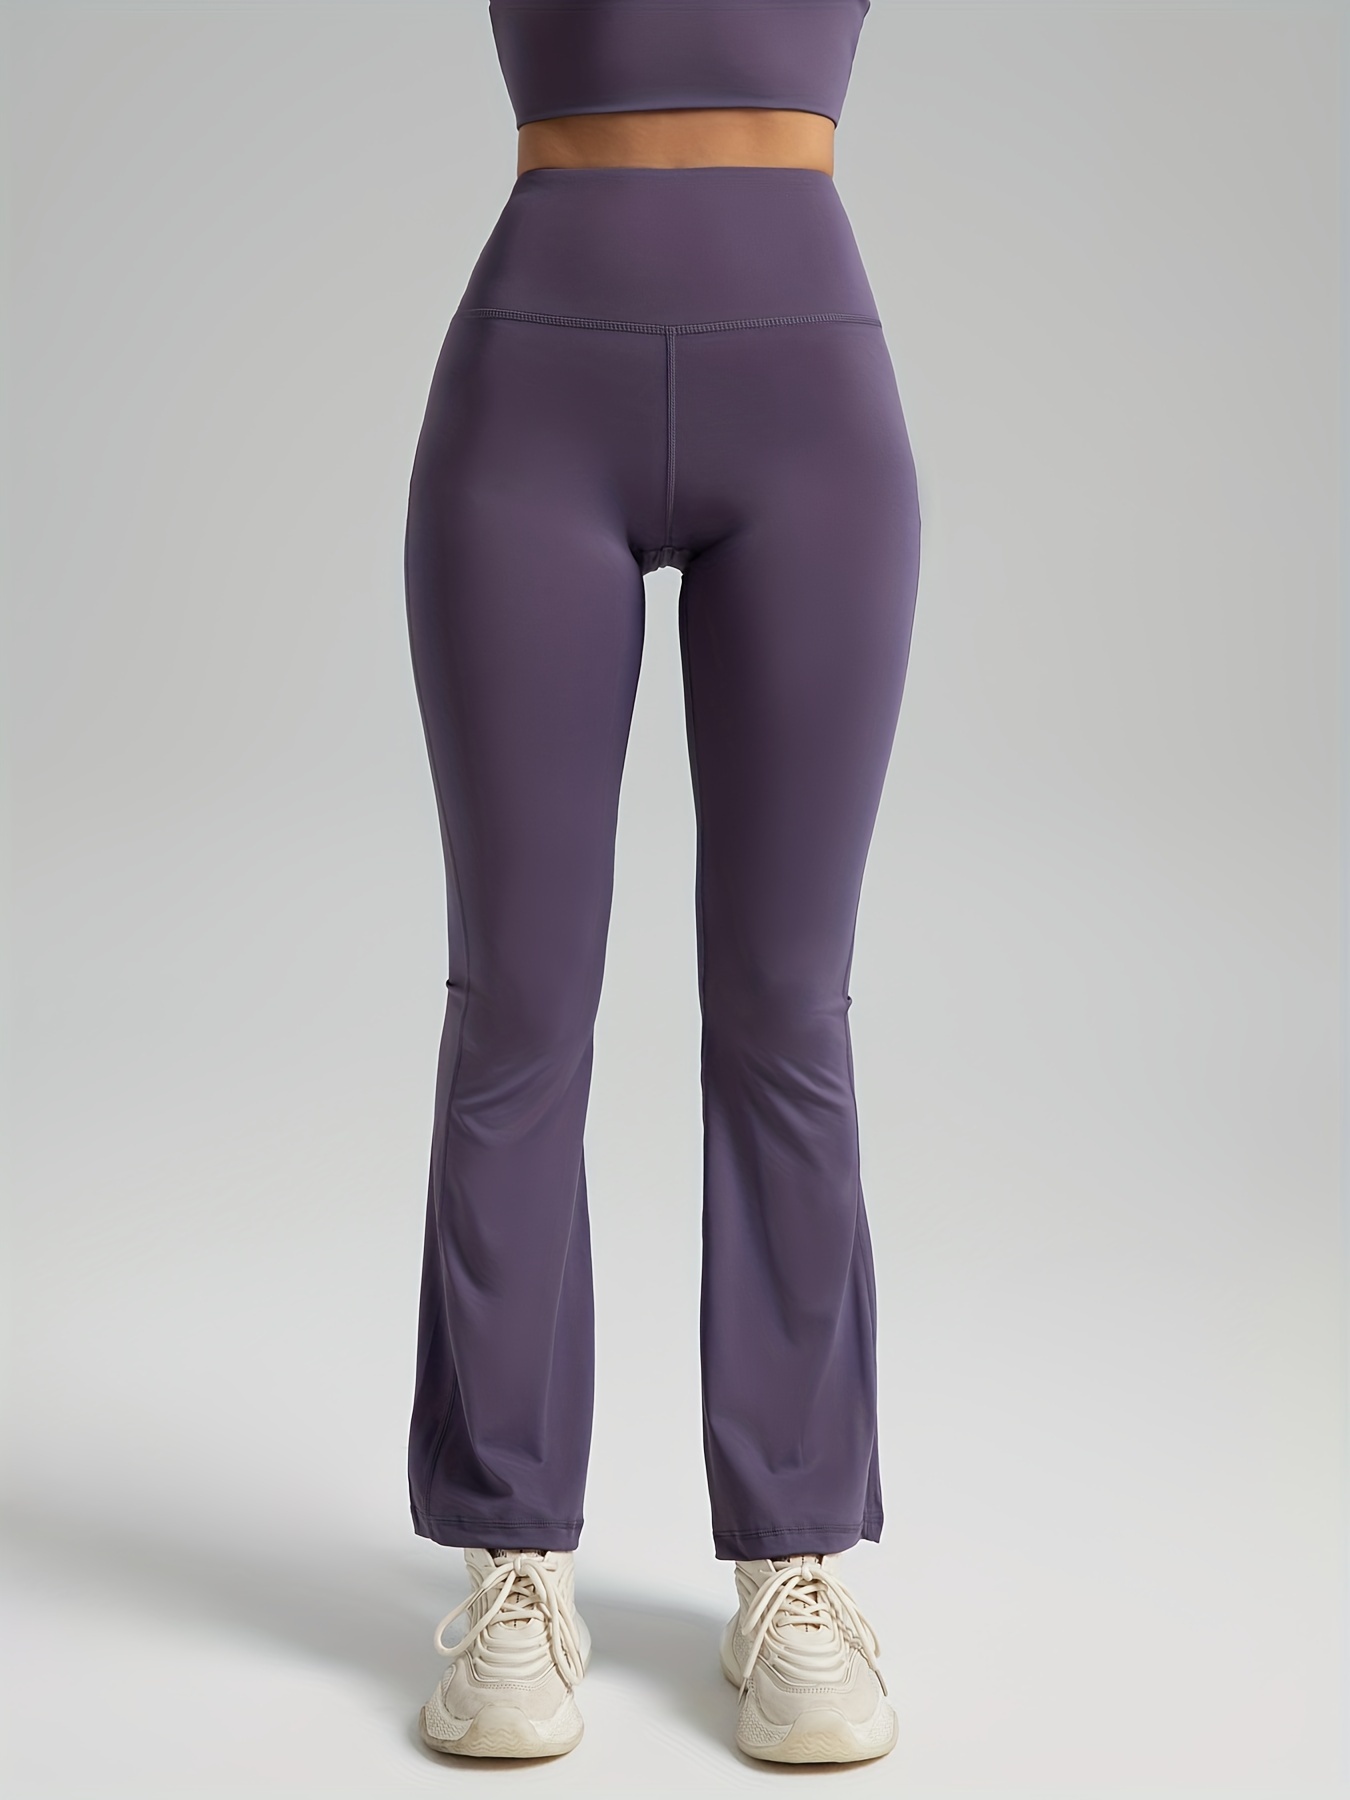 Lululemon leggings high waisted purple color